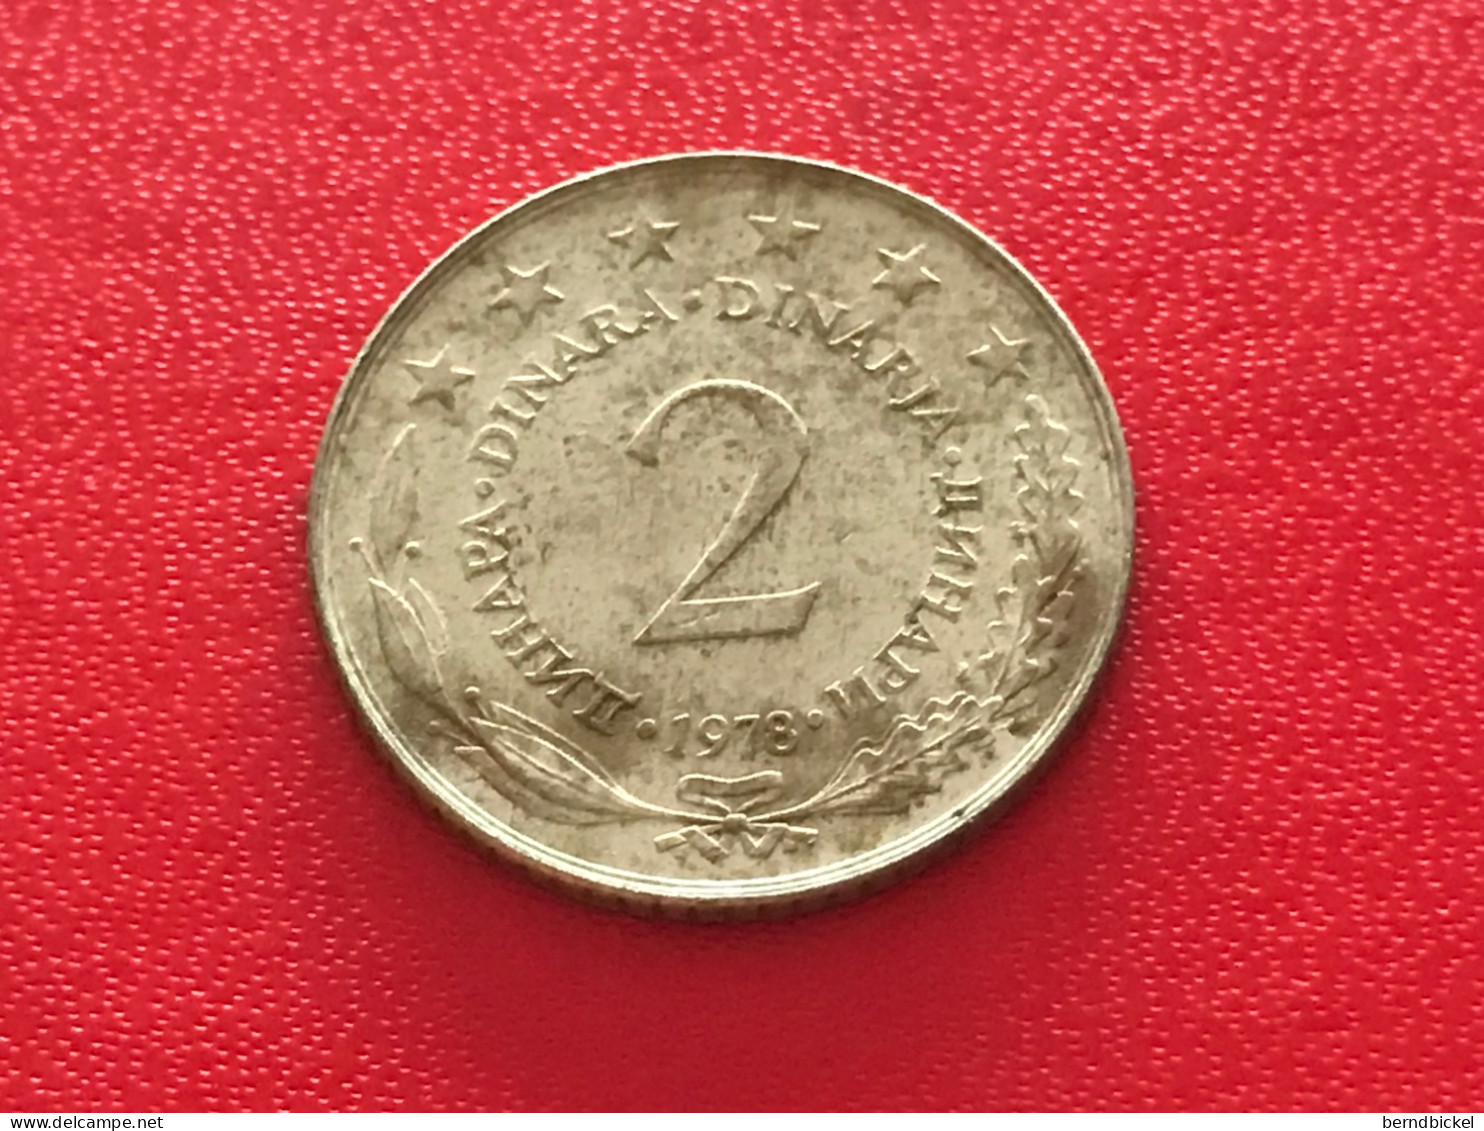 Münze Münzen Umlaufmünze Jugoslawien 2 Dinar 1978 - Joegoslavië